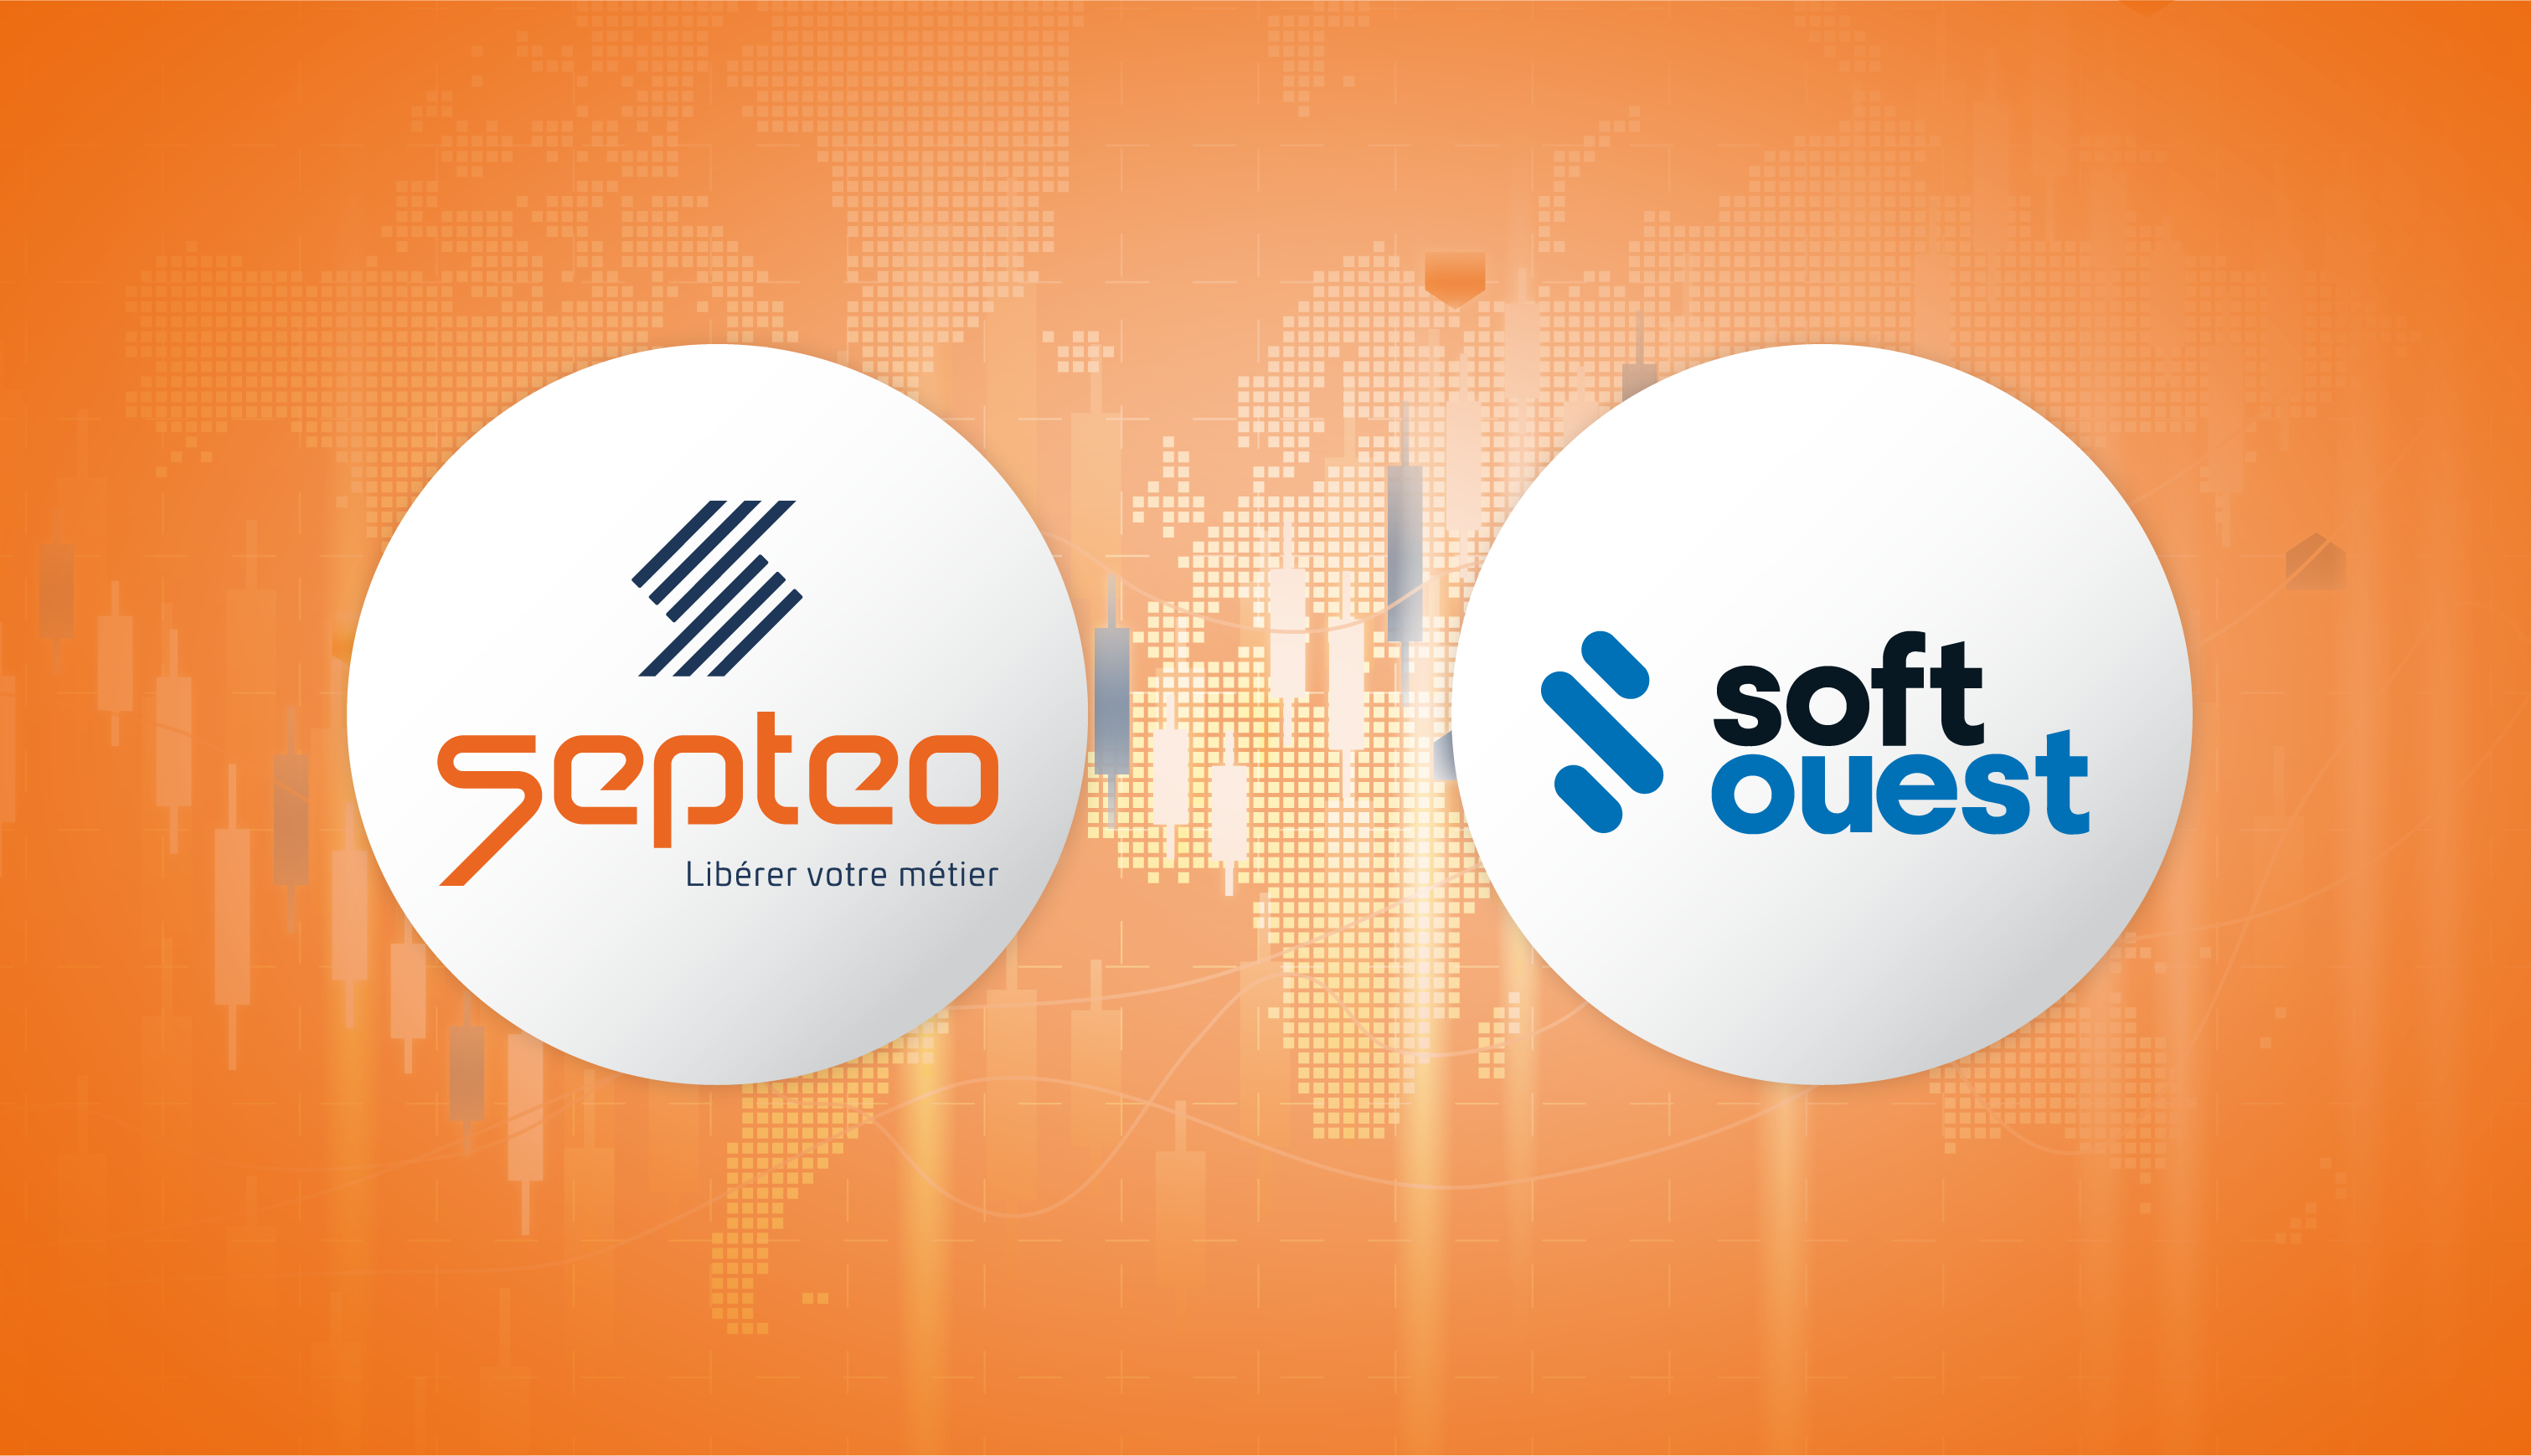 Septeo étend son expertise aux huissiers de justice en faisant l’acquisition de SoftOuest